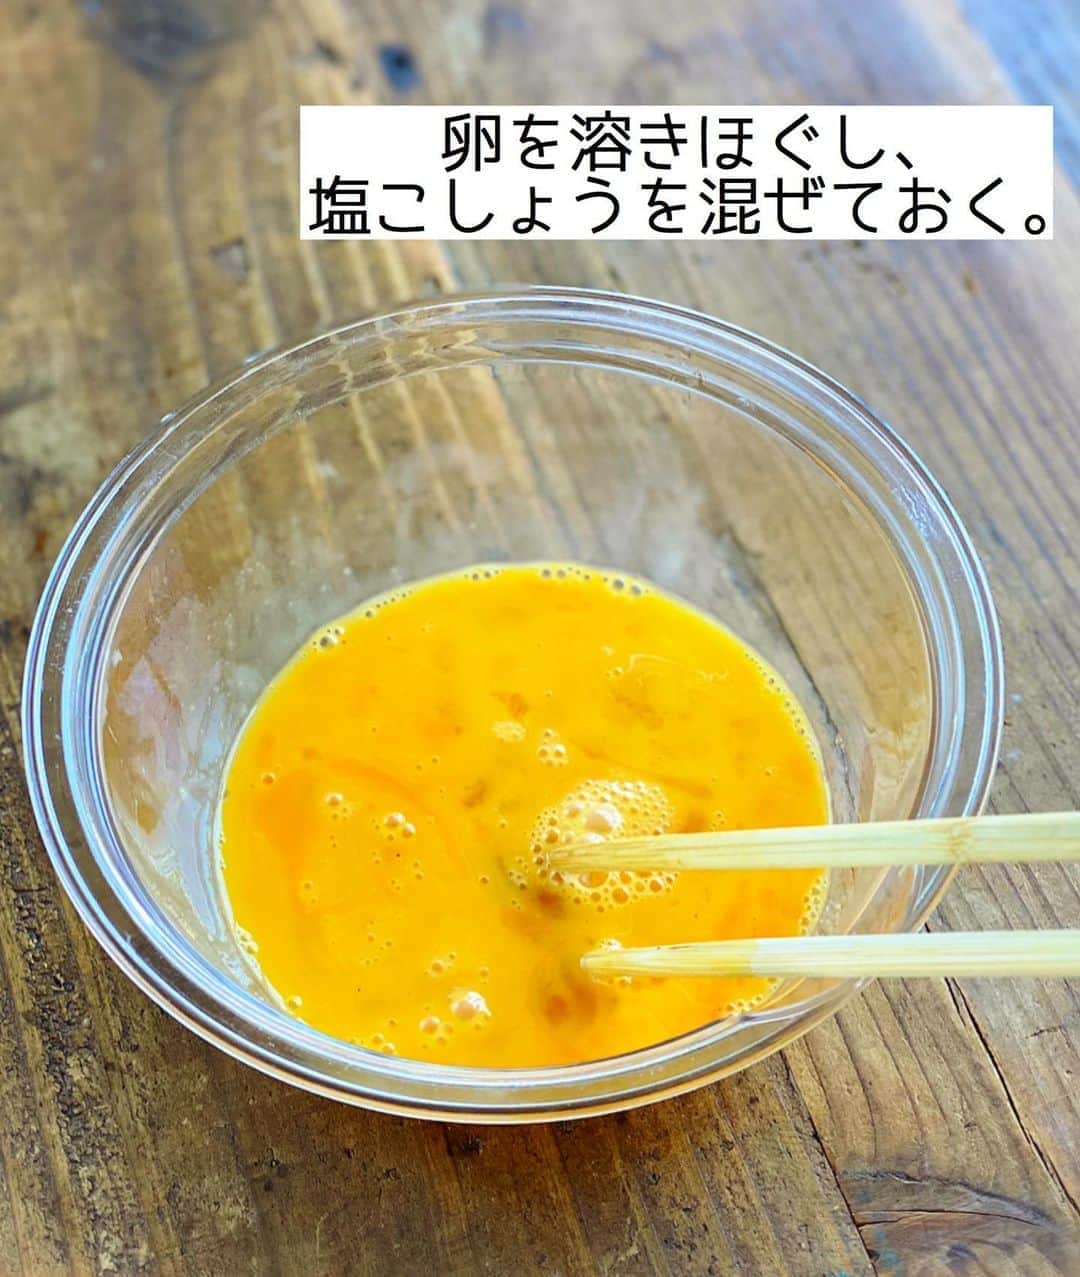 Mizuki【料理ブロガー・簡単レシピ】さんのインスタグラム写真 - (Mizuki【料理ブロガー・簡単レシピ】Instagram)「・﻿ 【レシピ】ーーーーーーー﻿ ♡もや玉中華あんかけ♡﻿ ーーーーーーーーーーーー﻿ ﻿ ﻿ ﻿ おはようございます(*^^*)﻿ ﻿ 今日ご紹介させていただくのは﻿ かに玉ならぬ \\もや玉//﻿ ということで説明するまでもなく﻿ カニの代わりにもやしを使った﻿ 簡単・時短・節約レシピです♡﻿ ﻿ ふんわり卵×シャキシャキもやしに﻿ とろ〜り中華あんが相性抜群♩﻿ コスパ最高&5分でできるので﻿ お気軽にお試し下さいね(*´艸`)﻿ ﻿ ﻿ ﻿ ーーーーーーーーーーーーーーーーーーーー﻿ 【2人分】﻿ 卵...3個﻿ 塩こしょう...少々﻿ もやし...1/2袋﻿ ごま油...大1﻿ ●水...150ml﻿ ●酒・オイスターソース...各小2﻿ ●片栗粉...大1/2﻿ ●鶏がらスープ...小1/3﻿ (あれば)万能ねぎ...適量﻿ ﻿ 1.ボウルで卵を溶きほぐし、塩こしょうを混ぜておく。﻿ 2.フライパンにごま油を中火で熱し、もやしをさっと炒める。1を流し入れて大きく混ぜ、半熟になったら器に盛り付けておく。﻿ 3.そのままのフライパンに●を入れ、よく混ぜてから中火にかける。混ぜながら加熱し、とろみがついたら2にかけ、斜め切りにしたねぎをのせる。﻿ ーーーーーーーーーーーーーーーーーーーー﻿ ﻿ ﻿ ﻿ 《ポイント》﻿ ♦︎卵が半熟になったら適当に形を整えて盛り付けて下さい♩﻿ ♦︎●をフライパンに入れたら手早く混ぜ、絶えず混ぜながら加熱して下さい♩﻿ ﻿ ﻿ ﻿ ﻿ ﻿ ﻿ ﻿ ＿＿＿＿＿＿＿＿＿＿＿＿＿＿＿＿＿＿＿﻿ 📕7刷重版しました📕﻿ 簡単・時短！ 毎日のごはんがラクになる﻿ ✨🦋 【 #Mizukiの今どき和食 】🦋✨﻿ ＿＿＿＿＿＿＿＿＿＿＿＿＿＿＿＿＿＿＿﻿ なるべく少ない材料で﻿ 手間も時間も省きながら﻿ 簡単にできるおいしい和食レシピ♩﻿ 簡単に失敗なくマスターできる一冊で﻿ もっと気軽に、カジュアルに﻿ 和食を楽しんで下さいね(*^^*)﻿ ＿＿＿＿＿＿＿＿＿＿＿＿＿＿＿＿＿＿＿﻿ ﻿ ﻿ ﻿ ＿＿＿＿＿＿＿＿＿＿＿＿＿＿＿＿＿＿＿﻿ 🎀6刷重版しました🎀﻿ 混ぜて焼くだけ。はじめてでも失敗しない！﻿ 【#ホットケーキミックスのお菓子 】﻿ ﻿ 一冊まるっとホケミスイーツ♩﻿ 普段のおやつから﻿ 特別な日にも使えるレシピを﻿ この一冊に詰め込みました(*^^*)﻿ ホットケーキミックスを使えば﻿ 簡単に本格的なお菓子が作れますよ♡﻿ ＿＿＿＿＿＿＿＿＿＿＿＿＿＿＿＿＿﻿ ﻿ ﻿ ﻿ ﻿ ￣￣￣￣￣￣￣￣￣￣￣￣￣￣￣￣￣￣﻿ レシピを作って下さった際や﻿ レシピ本についてのご投稿には﻿ タグ付け( @mizuki_31cafe )して﻿ お知らせいただけると嬉しいです😊💕﻿ ＿＿＿＿＿＿＿＿＿＿＿＿＿＿＿＿＿＿﻿ ﻿ ﻿ ﻿ ﻿ ﻿ #もやし#卵#もや玉#あんかけ#中華あんかけ#コスパ﻿ #Mizuki#簡単レシピ#時短レシピ#節約レシピ#料理#レシピ#フーディーテーブル#マカロニメイト#おうちごはん#デリスタグラマー#料理好きな人と繋がりたい#食べ物#料理記録#おうちごはんlover#写真好きな人と繋がりたい#foodpic#cooking#recipe#lin_stagrammer#foodporn#yummy#もや玉中華あんかけm」8月31日 6時52分 - mizuki_31cafe